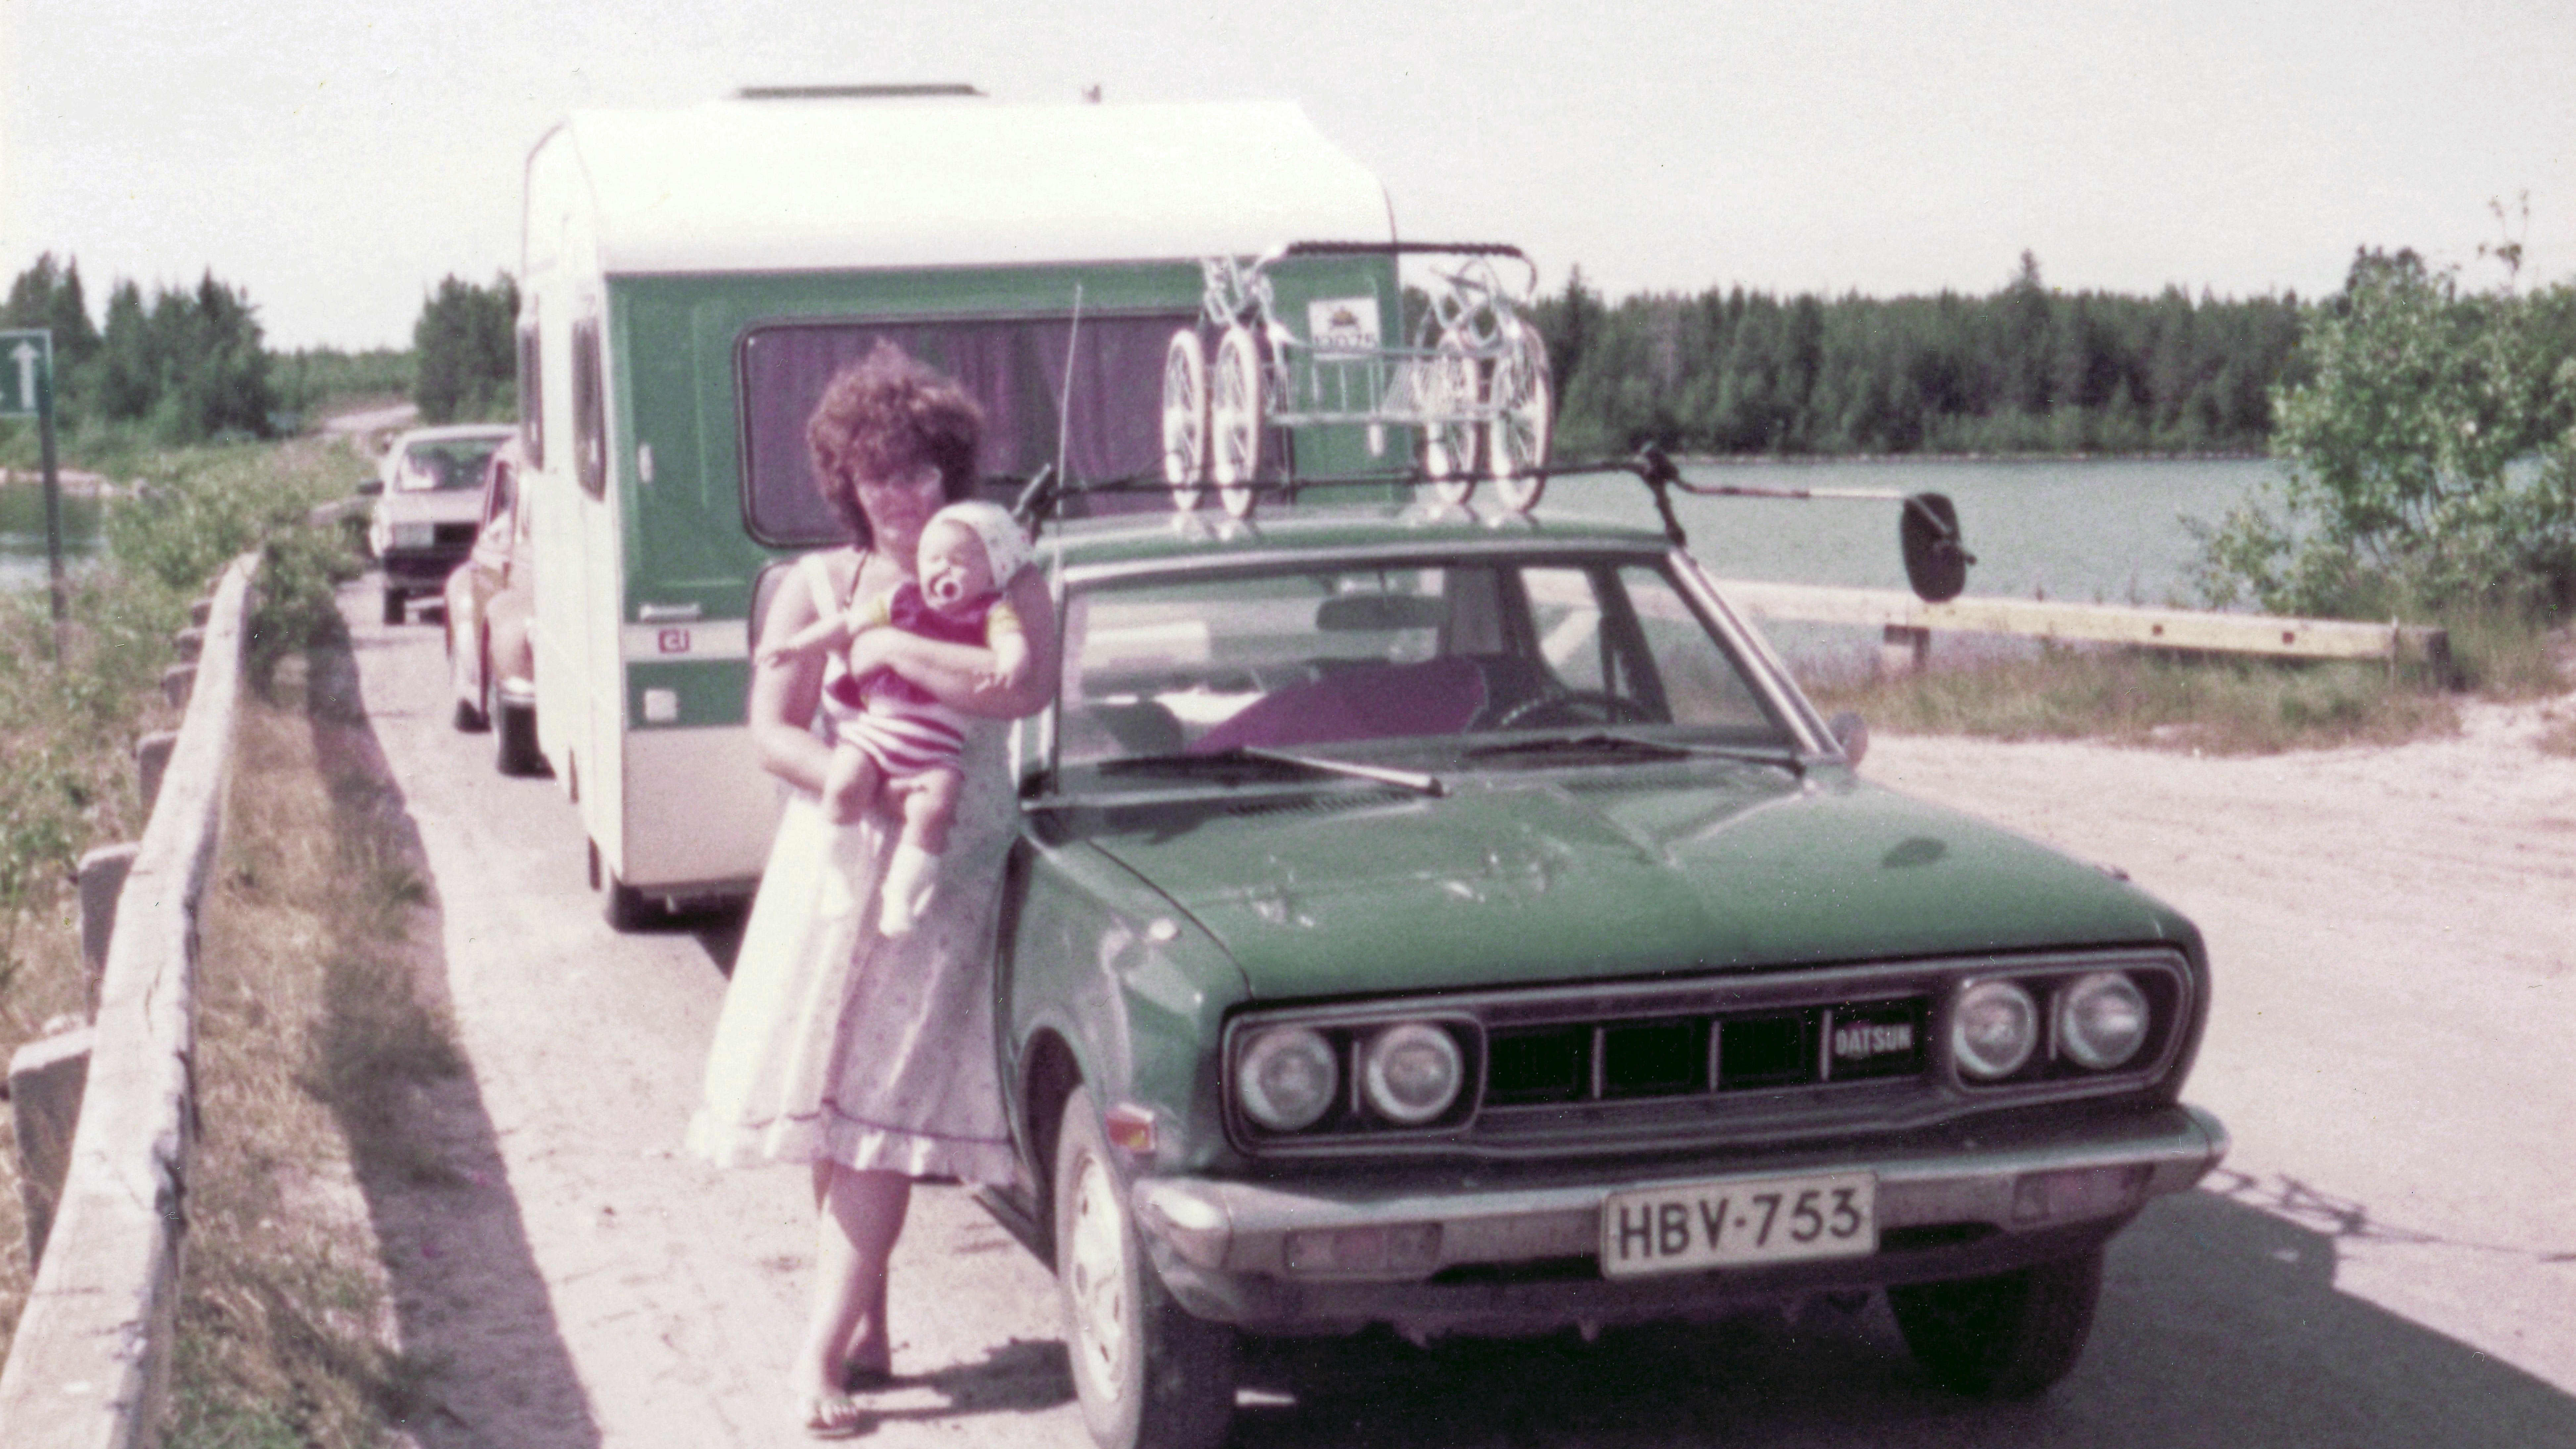 Kesällä 1983 Datsun kuljetti Soinin perheen lastenrattaineen ja asuntovaunuineen perille. Kuvassa perhe Manamansalon lossin odotuspaikalla.